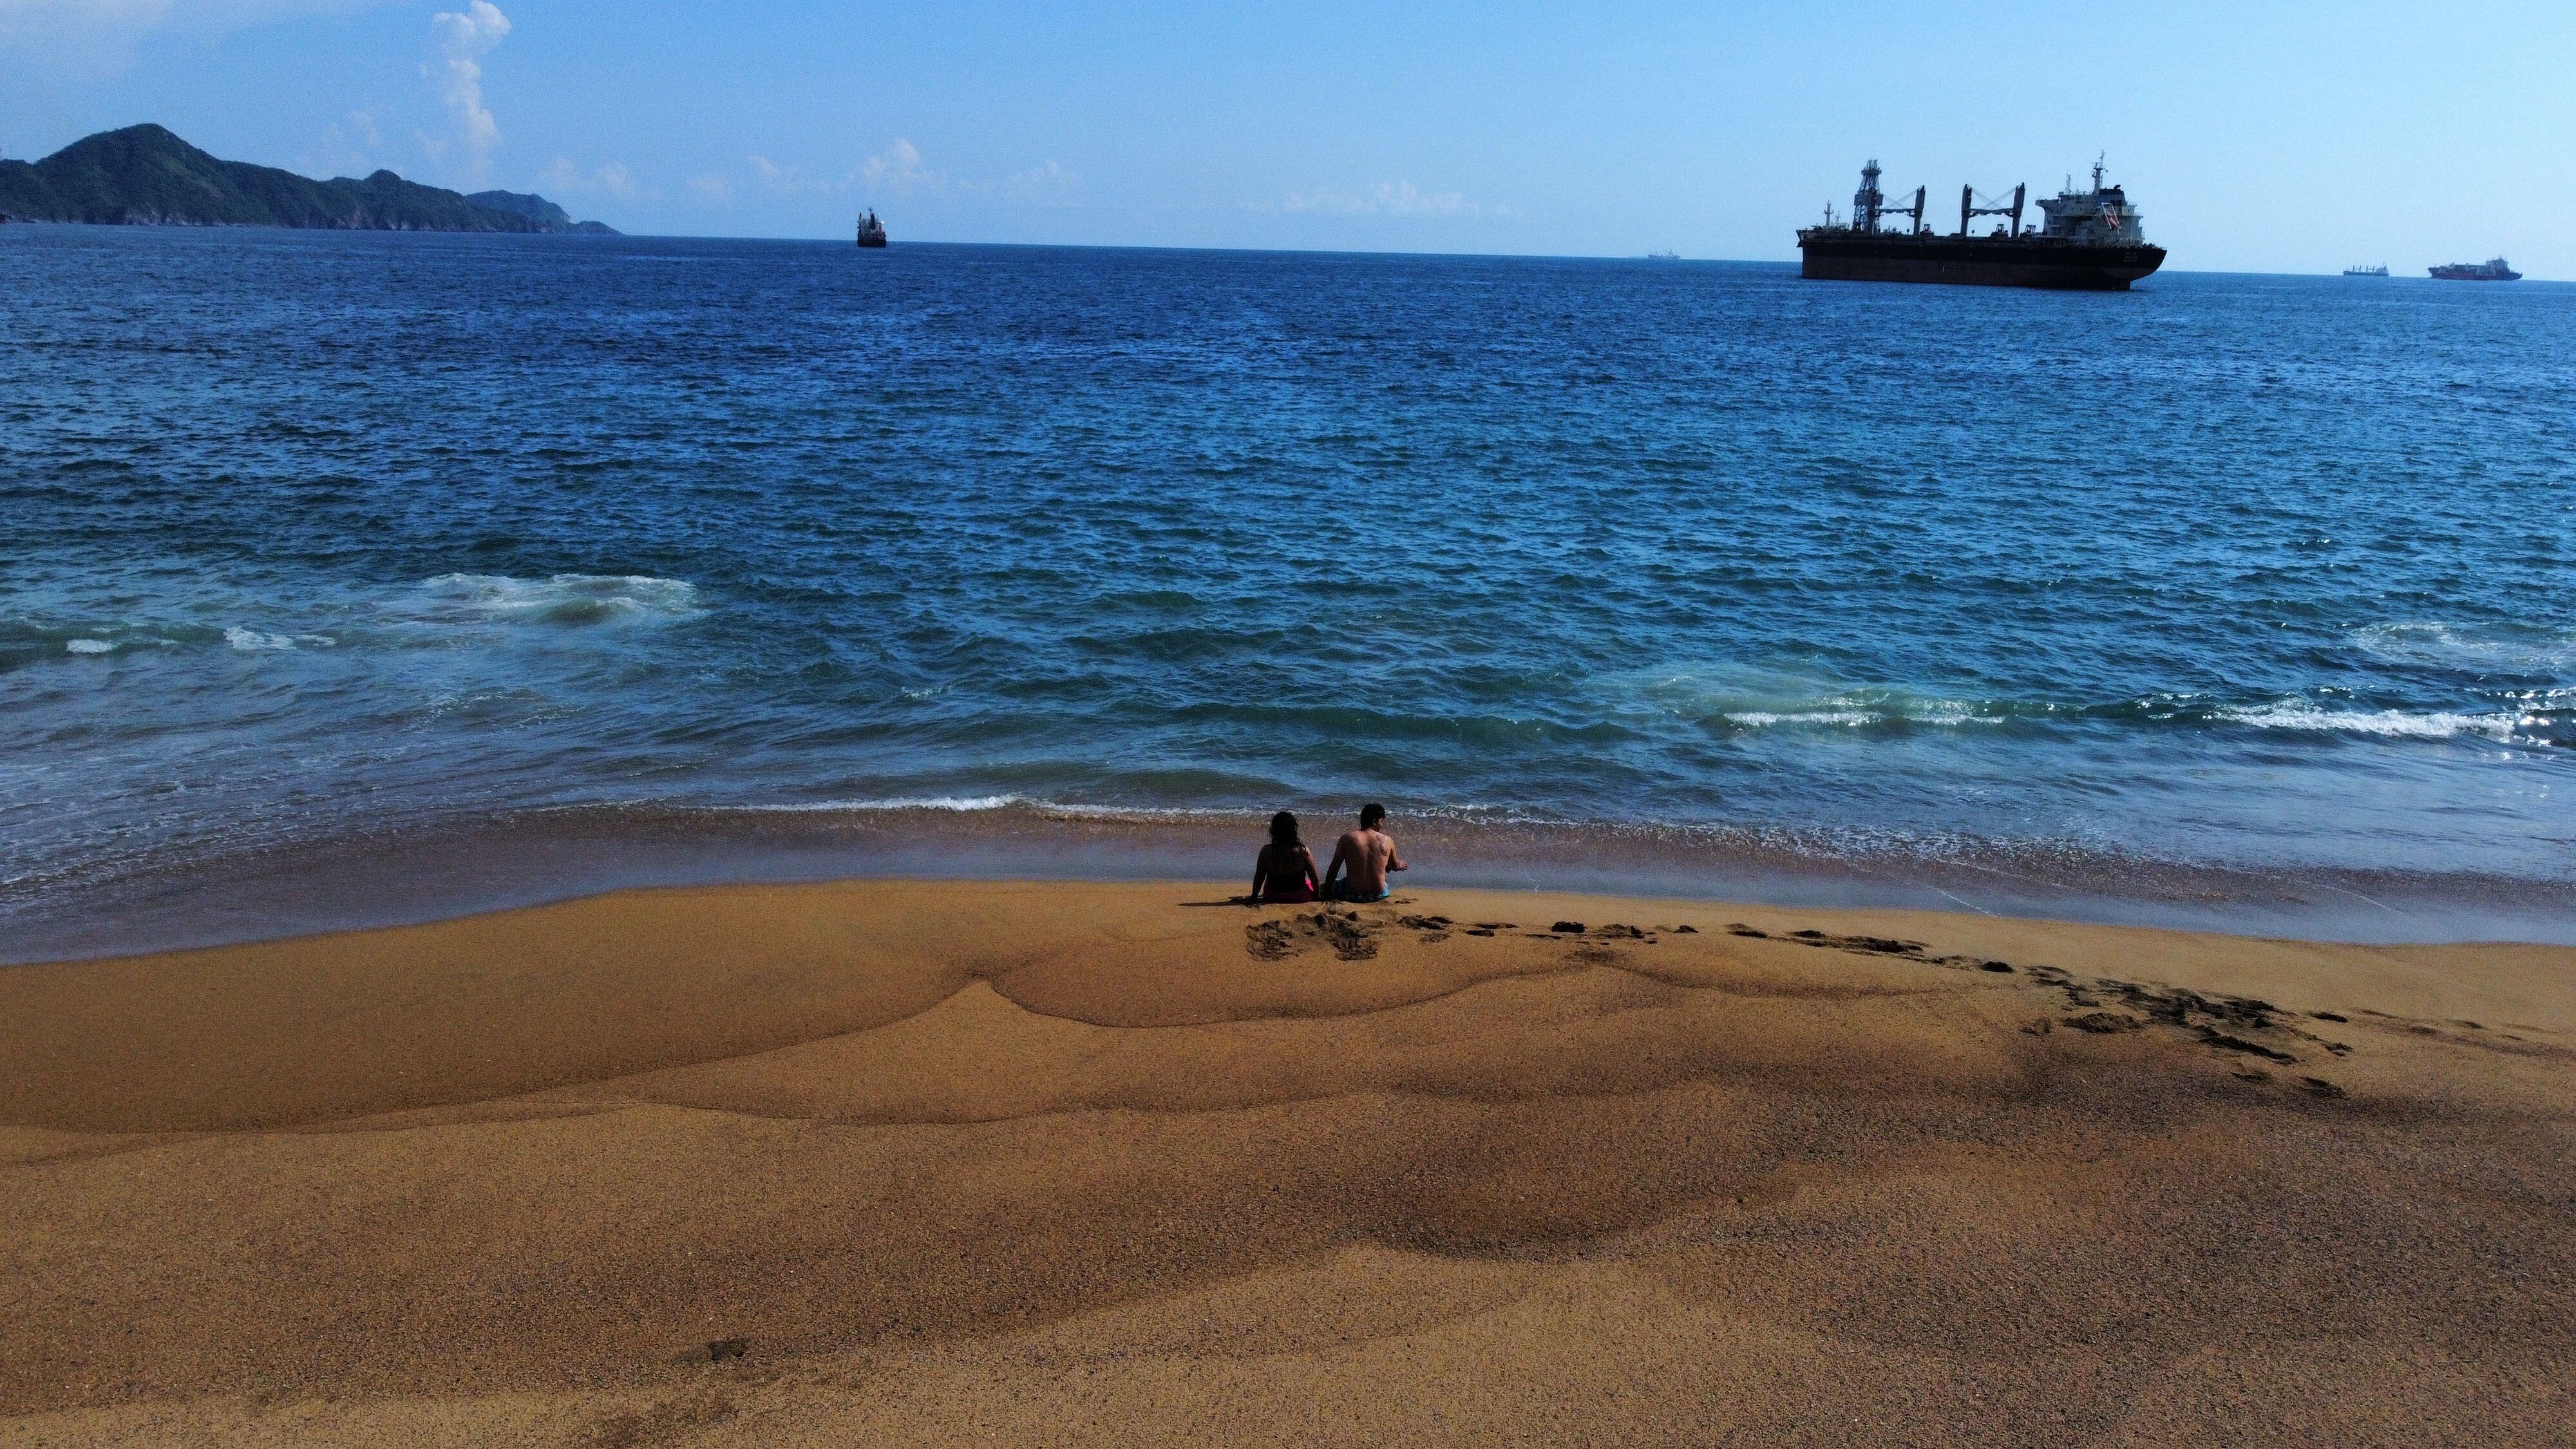 La playa de Manzanillo, lugar al que fue llevado el náufrago australiano Timothy Shaddock, rescatado el pasado 12 de julio en el océano Pacífico.